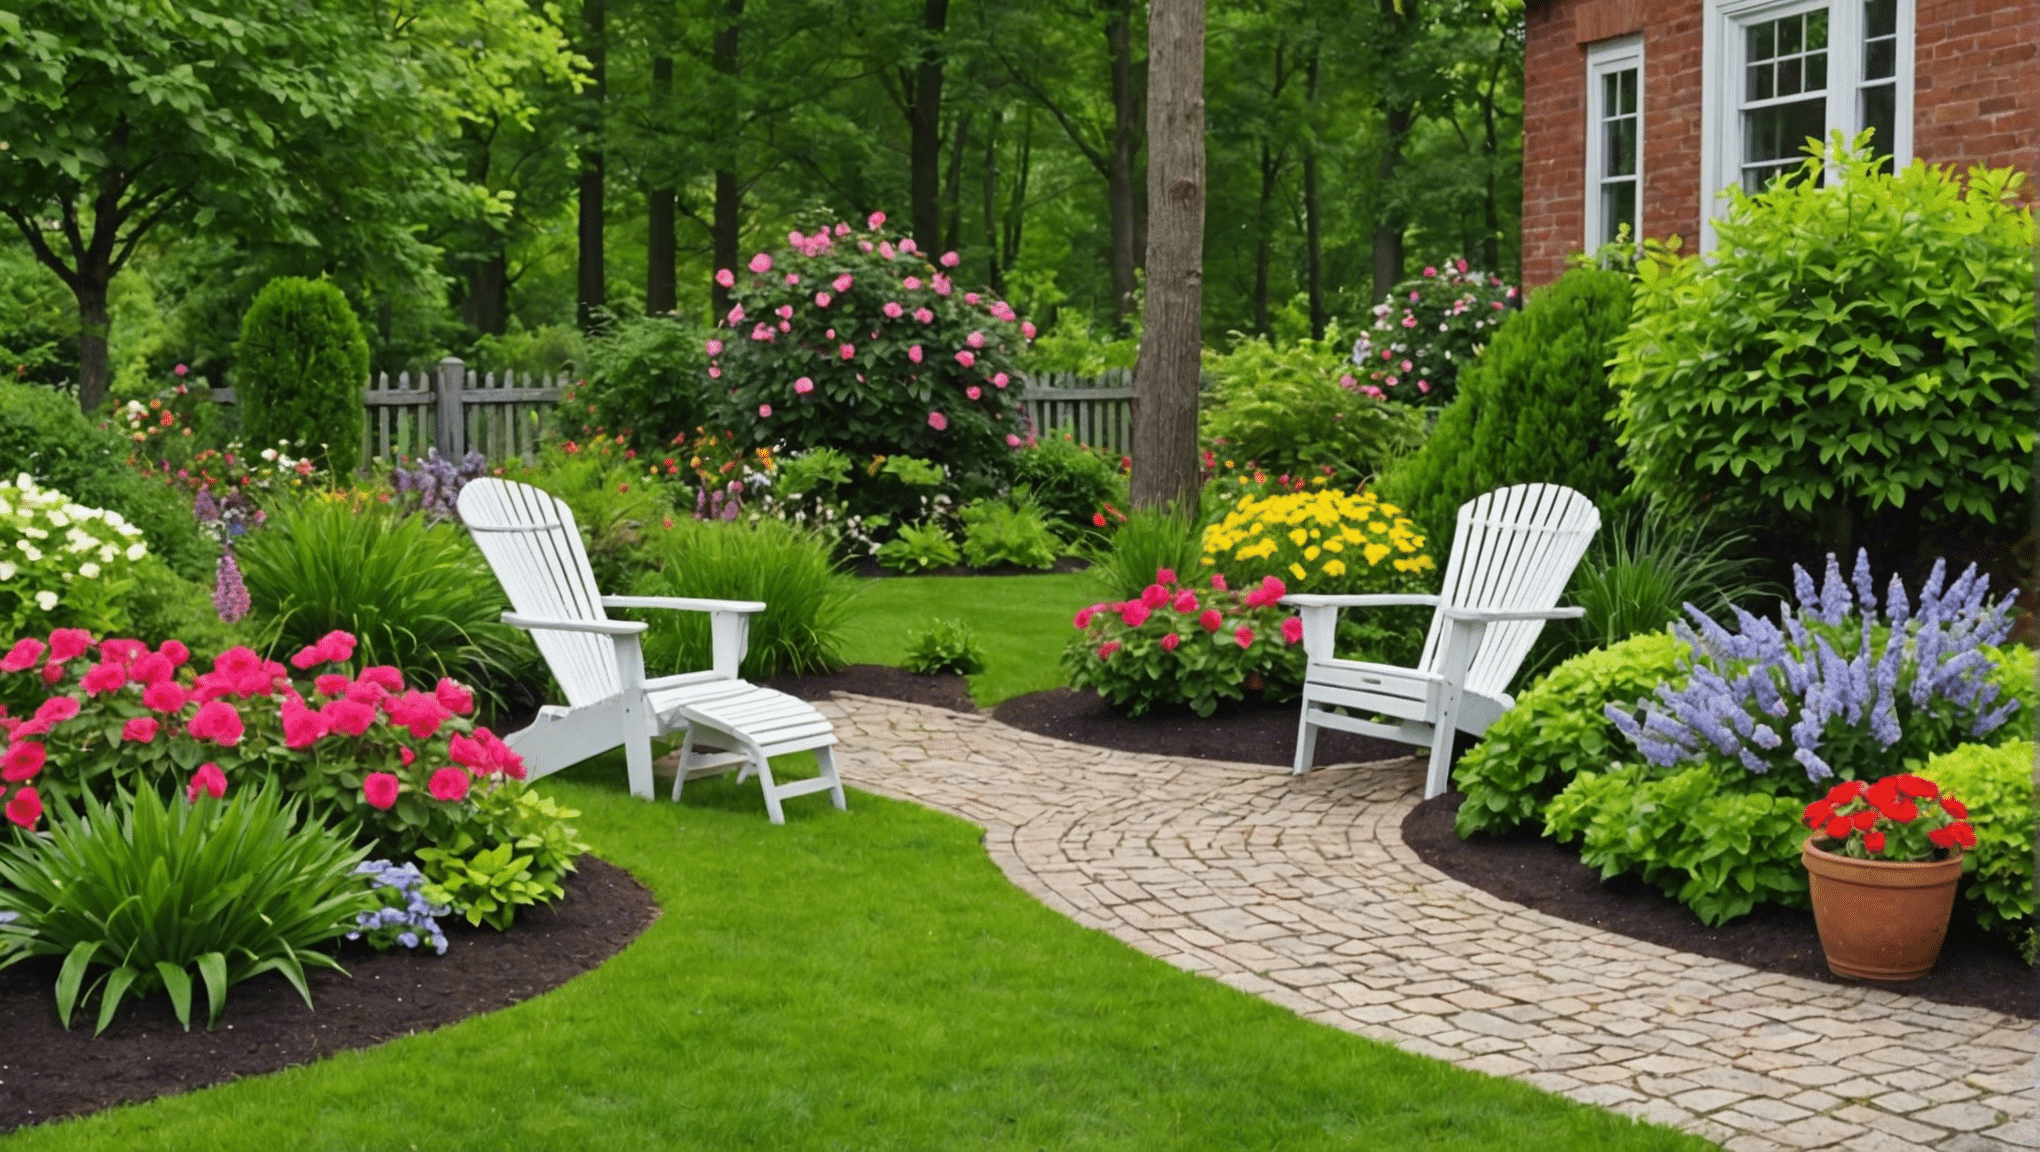 scopri le migliori idee regalo per il giardinaggio in pensione per celebrare e onorare l'amore del pensionato per il giardinaggio. acquista ora per i regali perfetti!